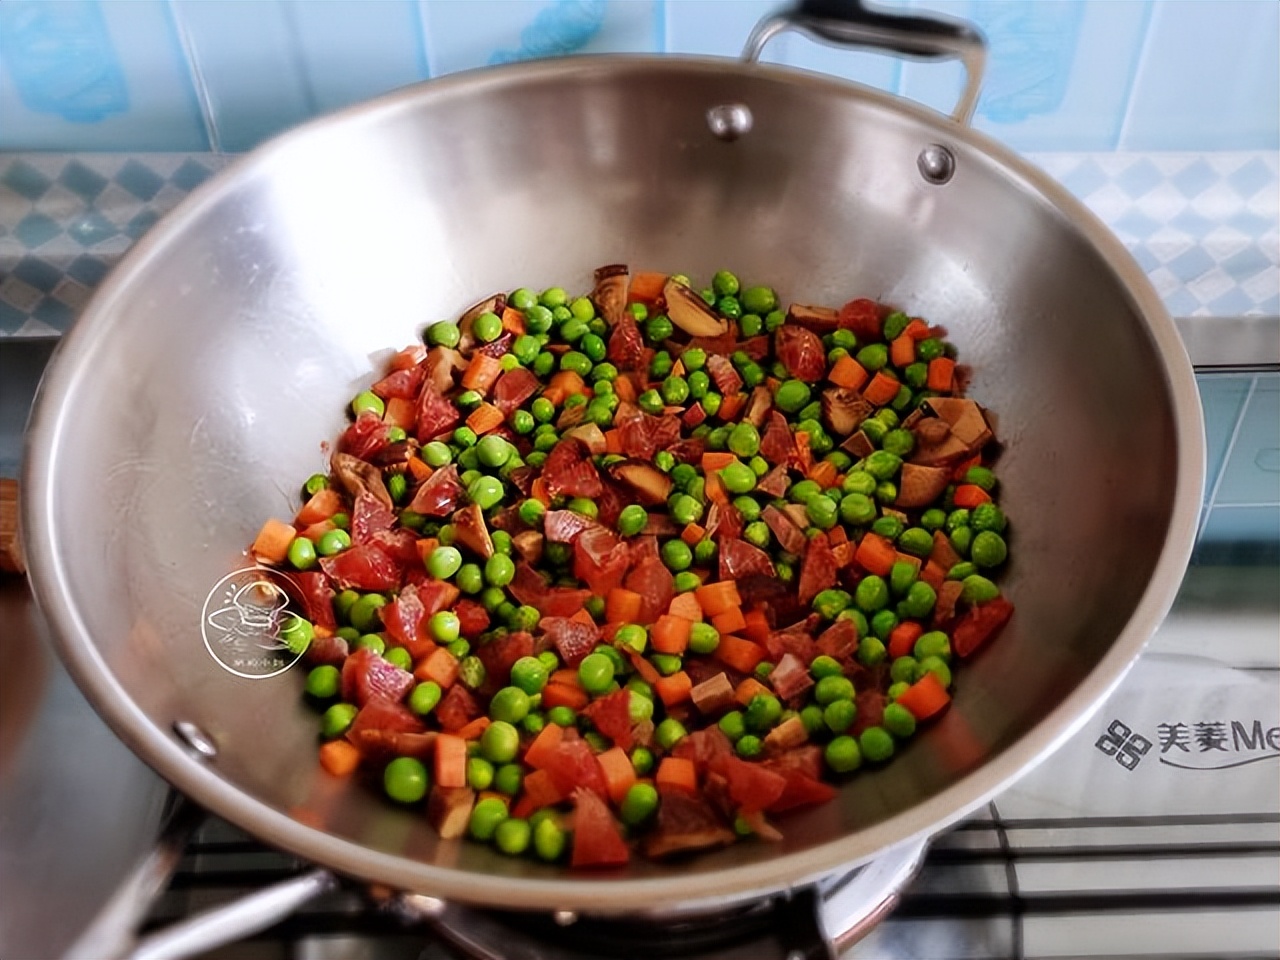 科学网—松阳豌豆饭的烹制要领 - 曾玉亮的博文